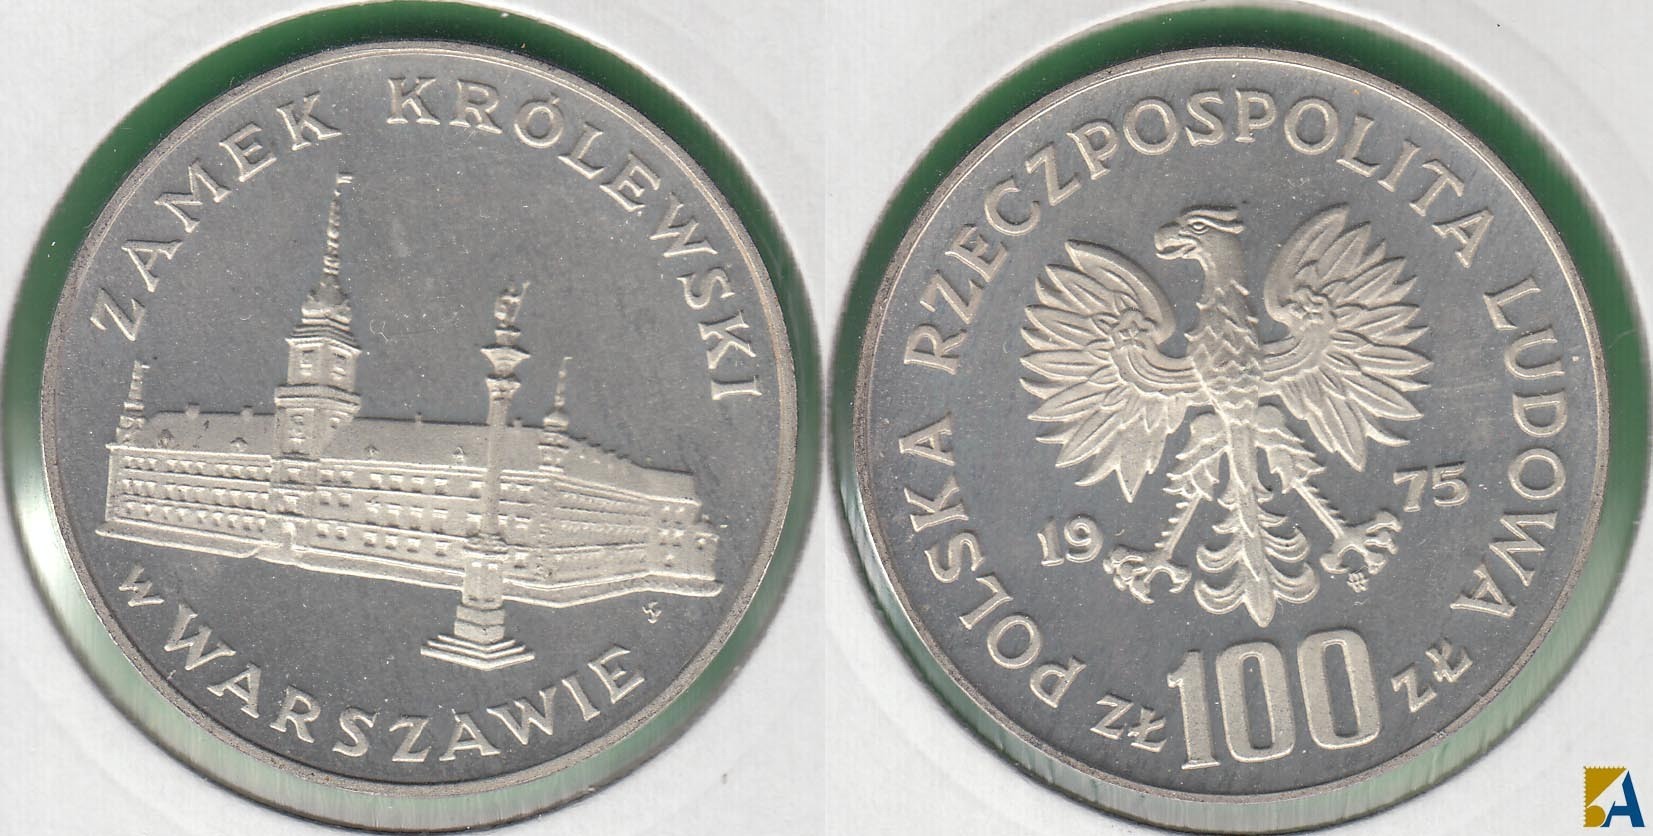 POLONIA - POLSKA. 100 ZLOTYCH DE 1975. PLATA 0.625.